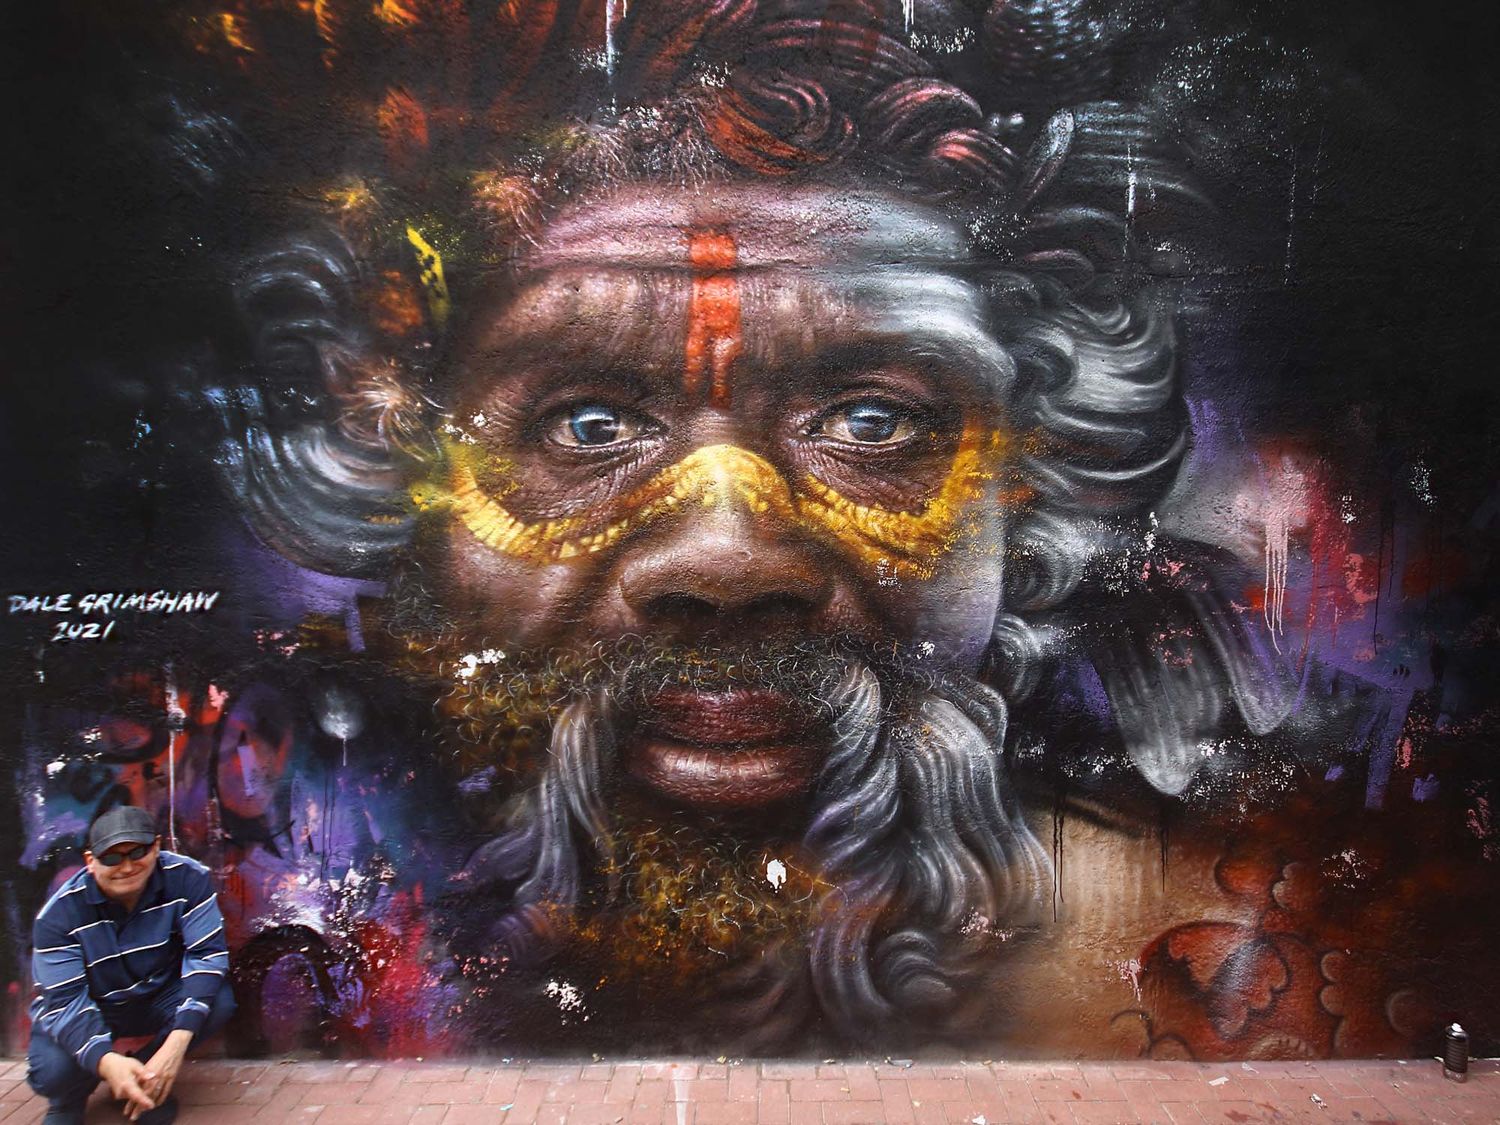 L'artiste Dale Grimshaw est connu pour ses fresques représentants des communautés tribales africaines, toujours inspiré par ses fortes convictions humaines (©Murcia Street Art Project).